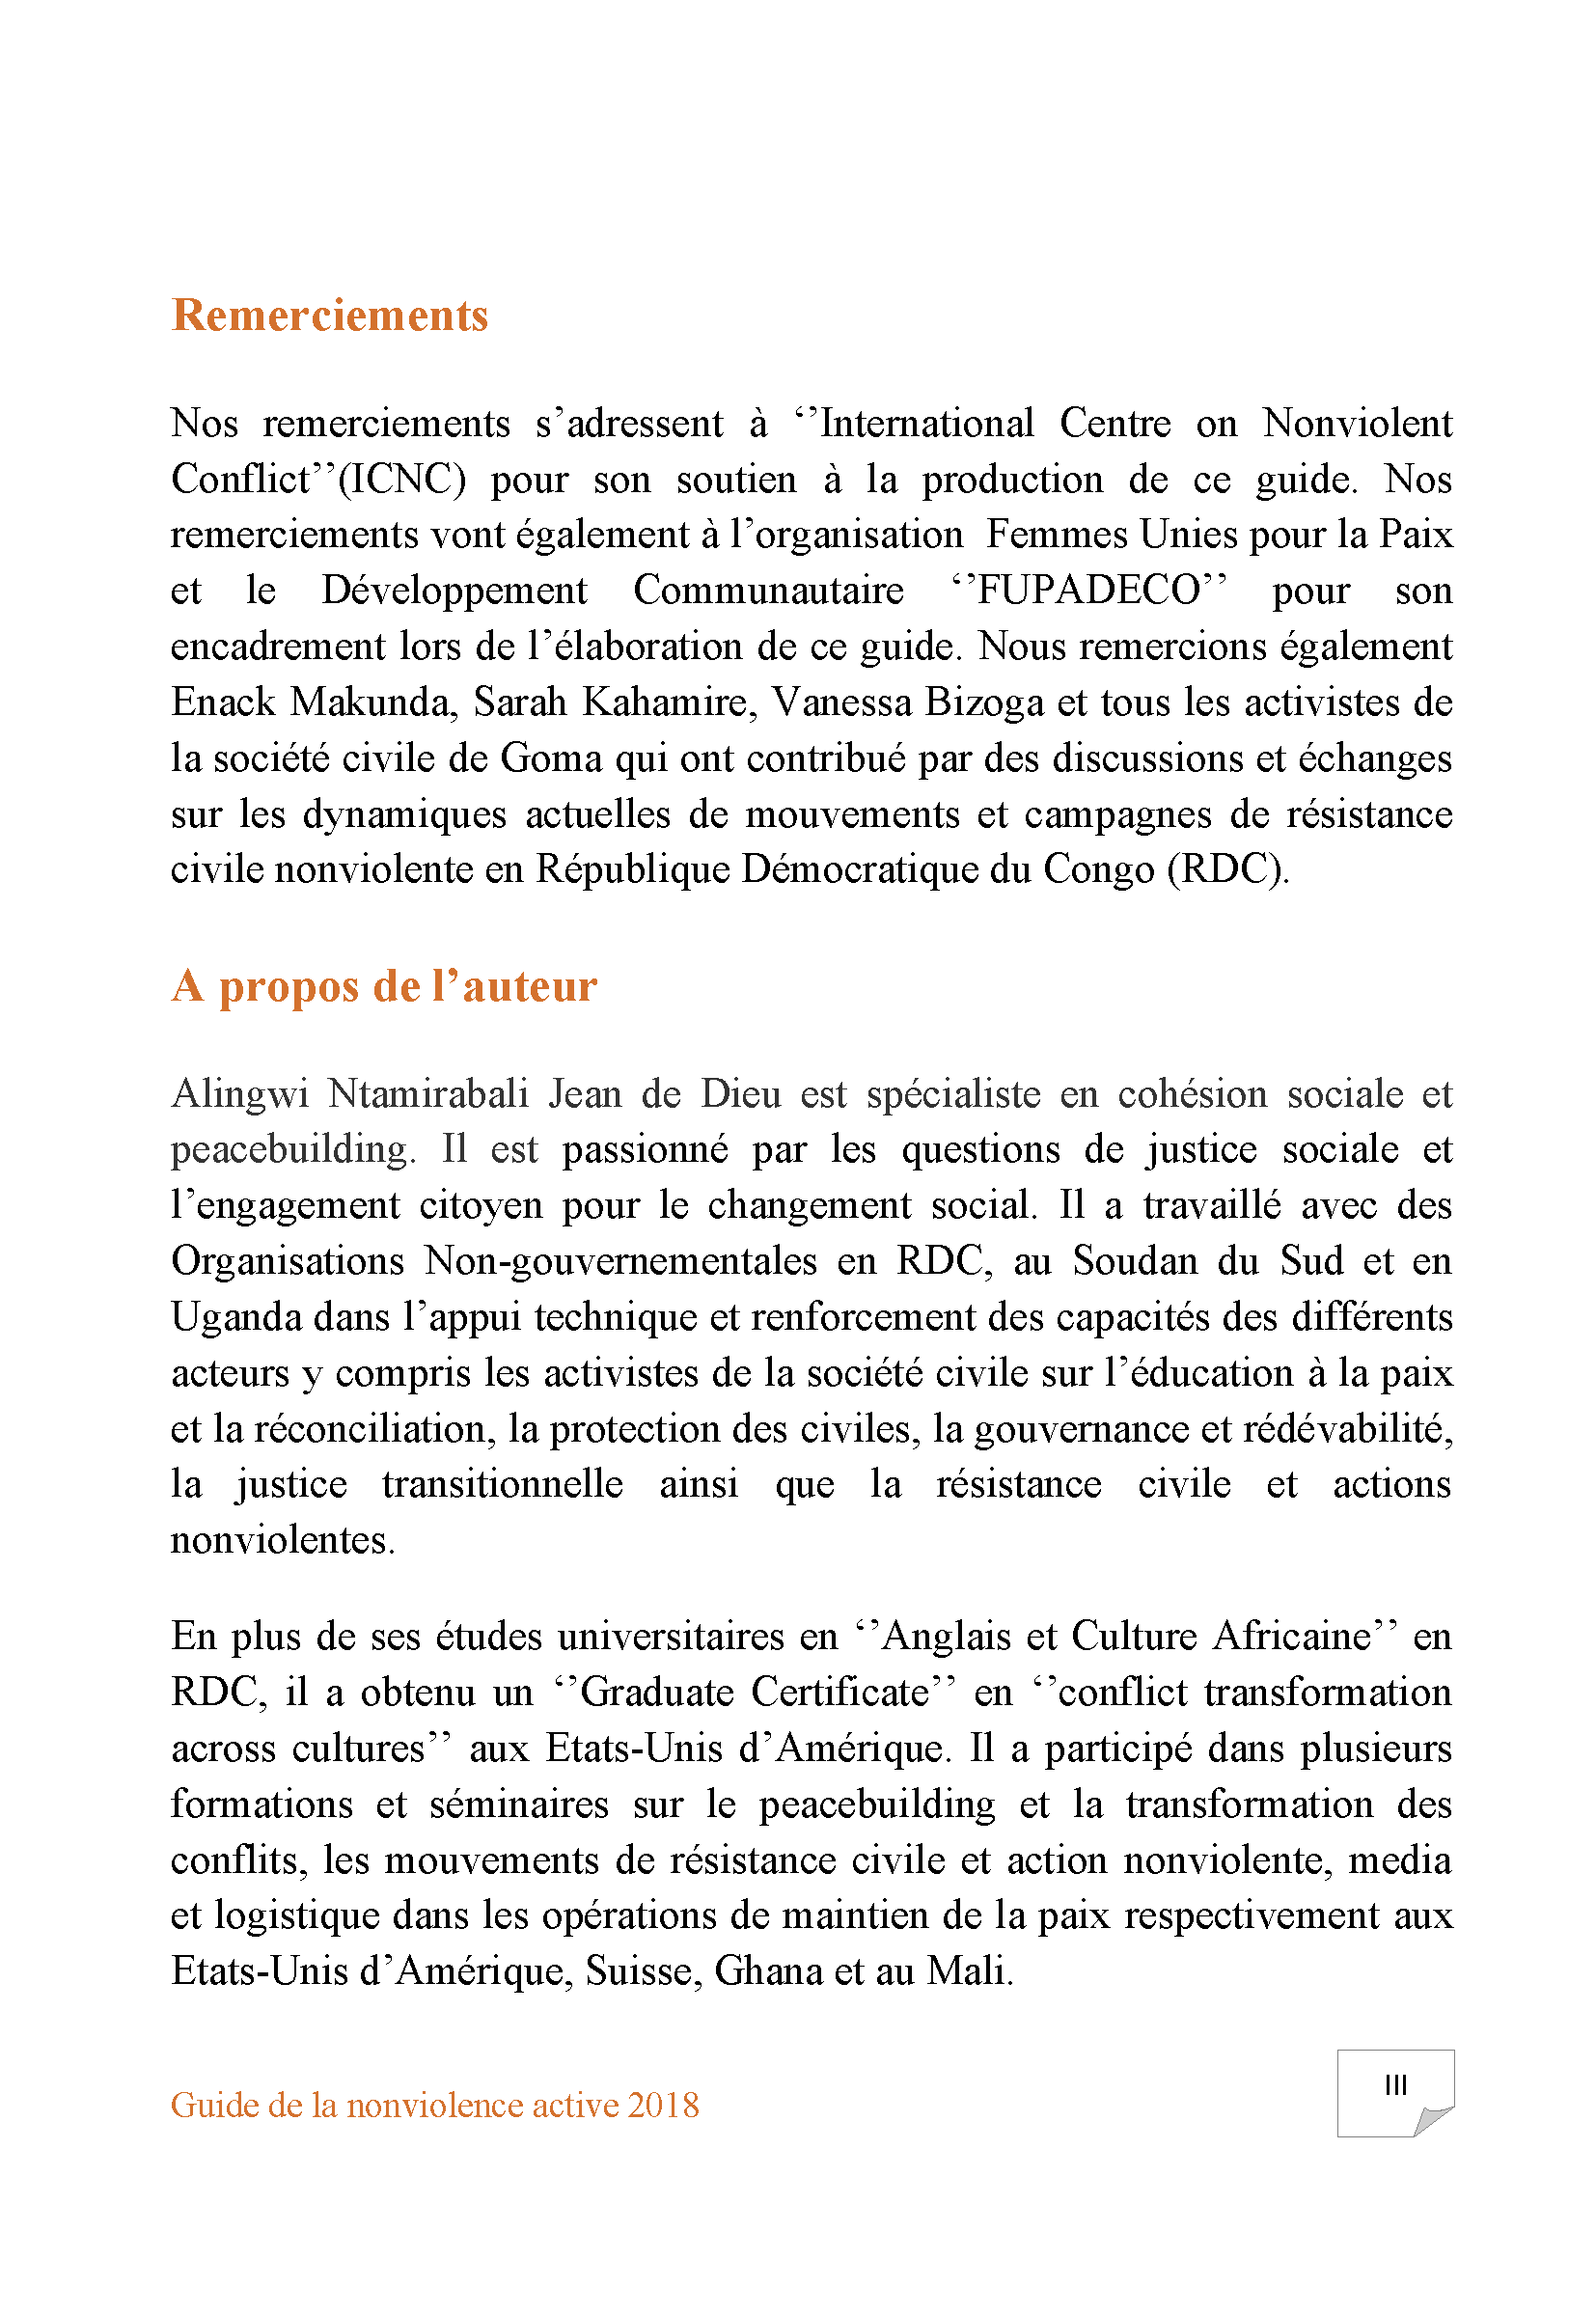 Guide de la nonviolence active: Introduction à la résistance civile et actions nonviolentes (French)